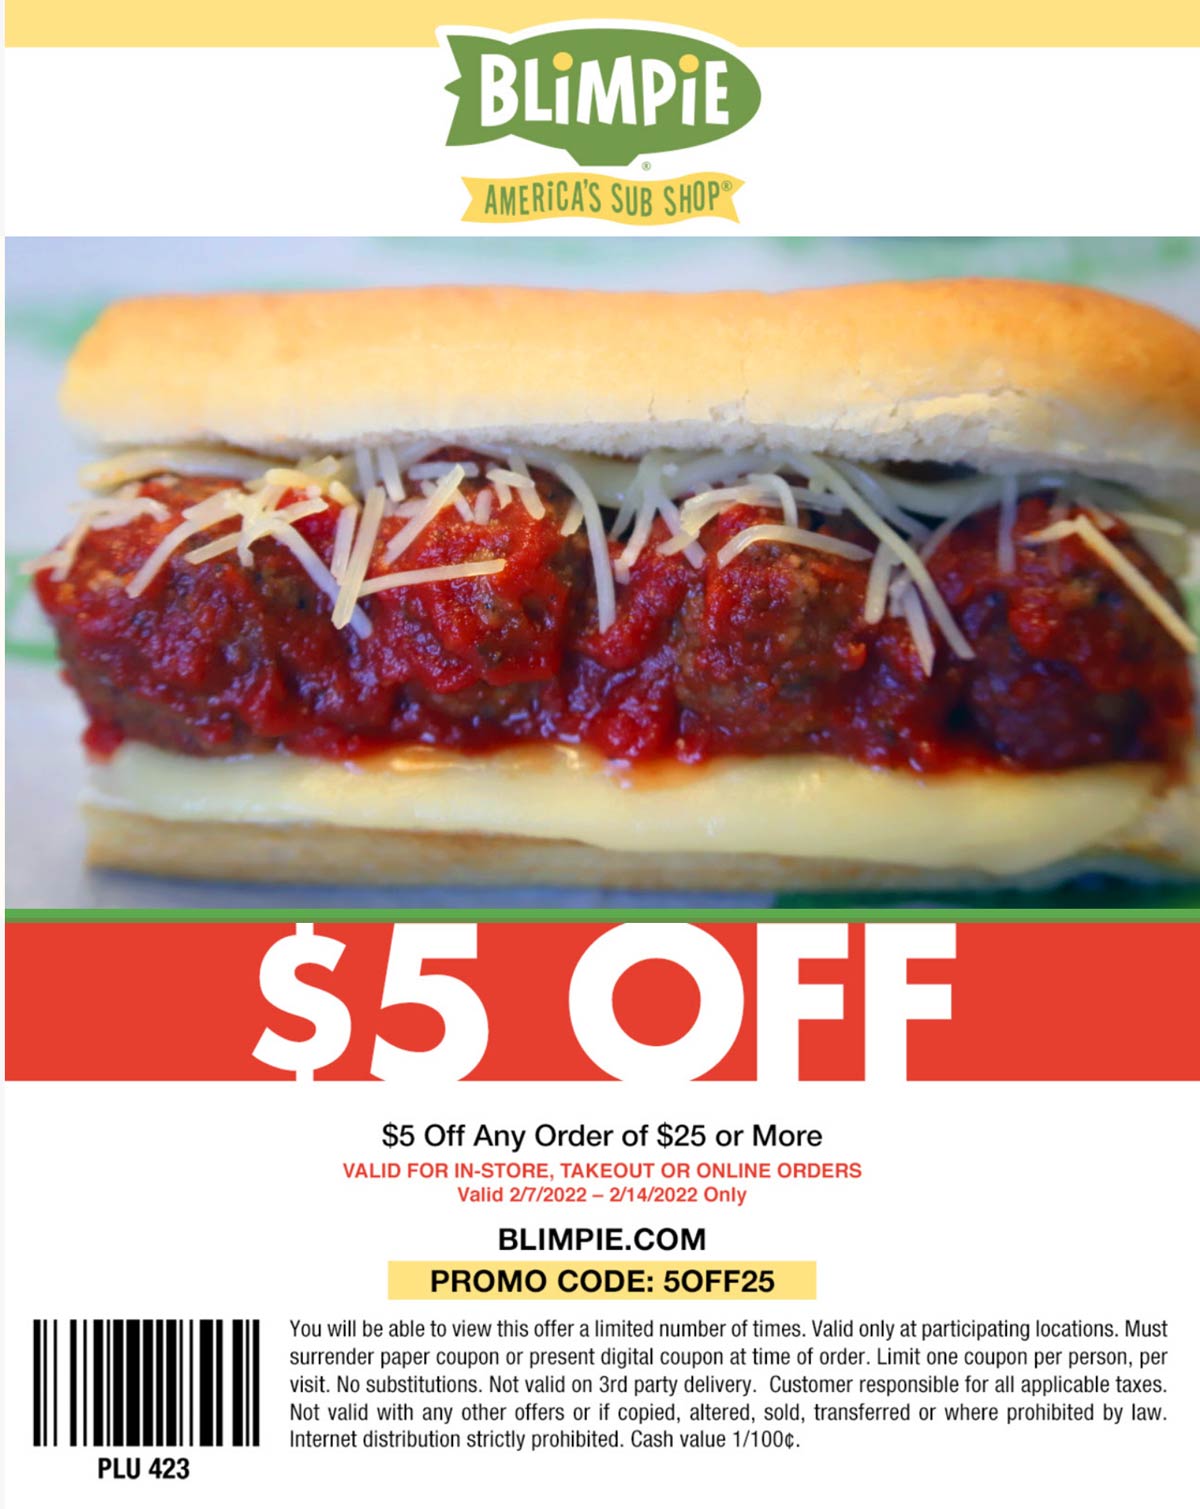 Blimpie restaurants Coupon  $5 off $25 at Blimpie sub sandwich restaurants via promo code 5OFF25 #blimpie 